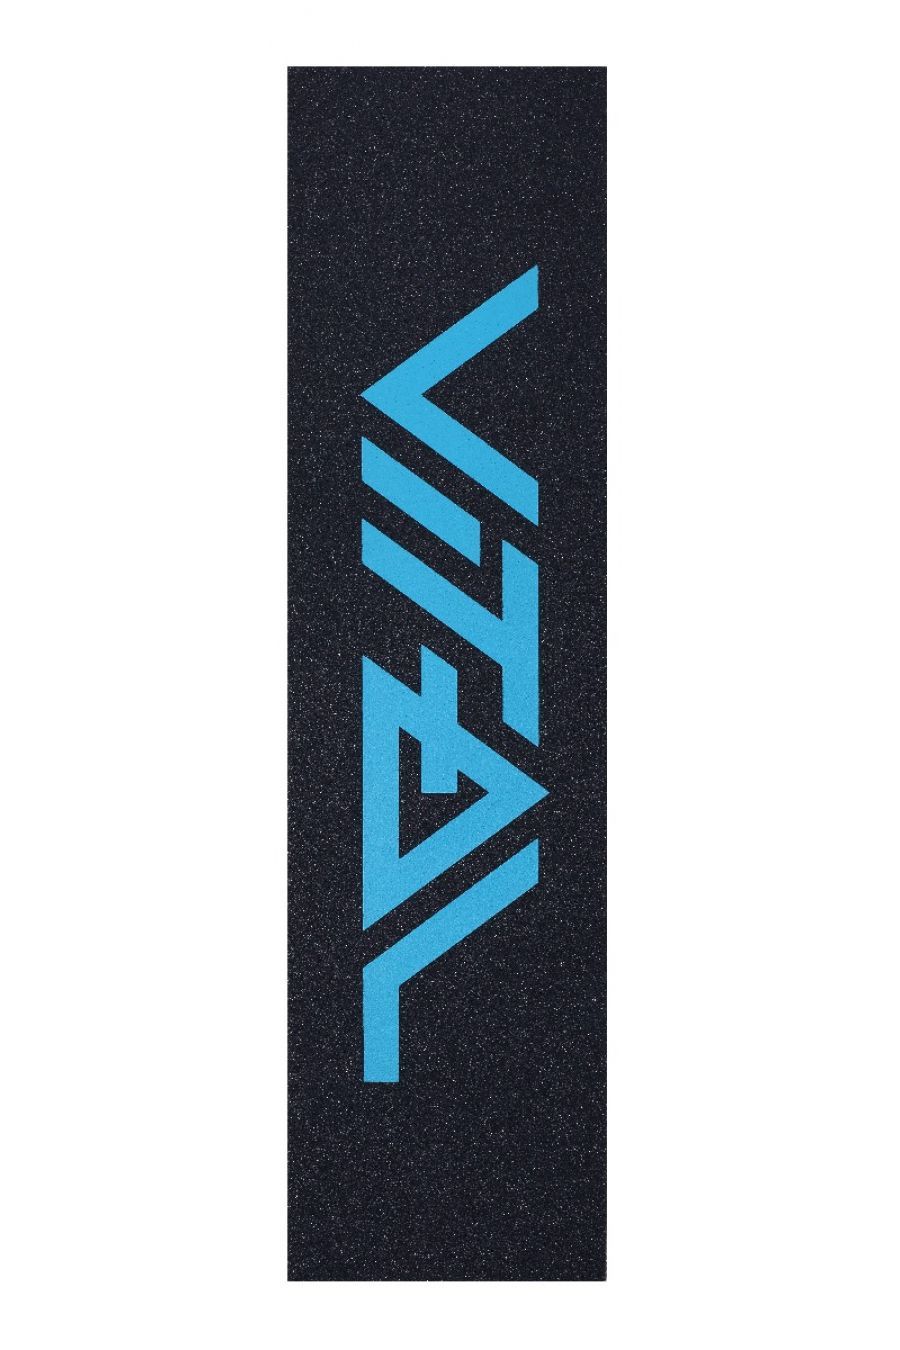 Grip Logo Teal